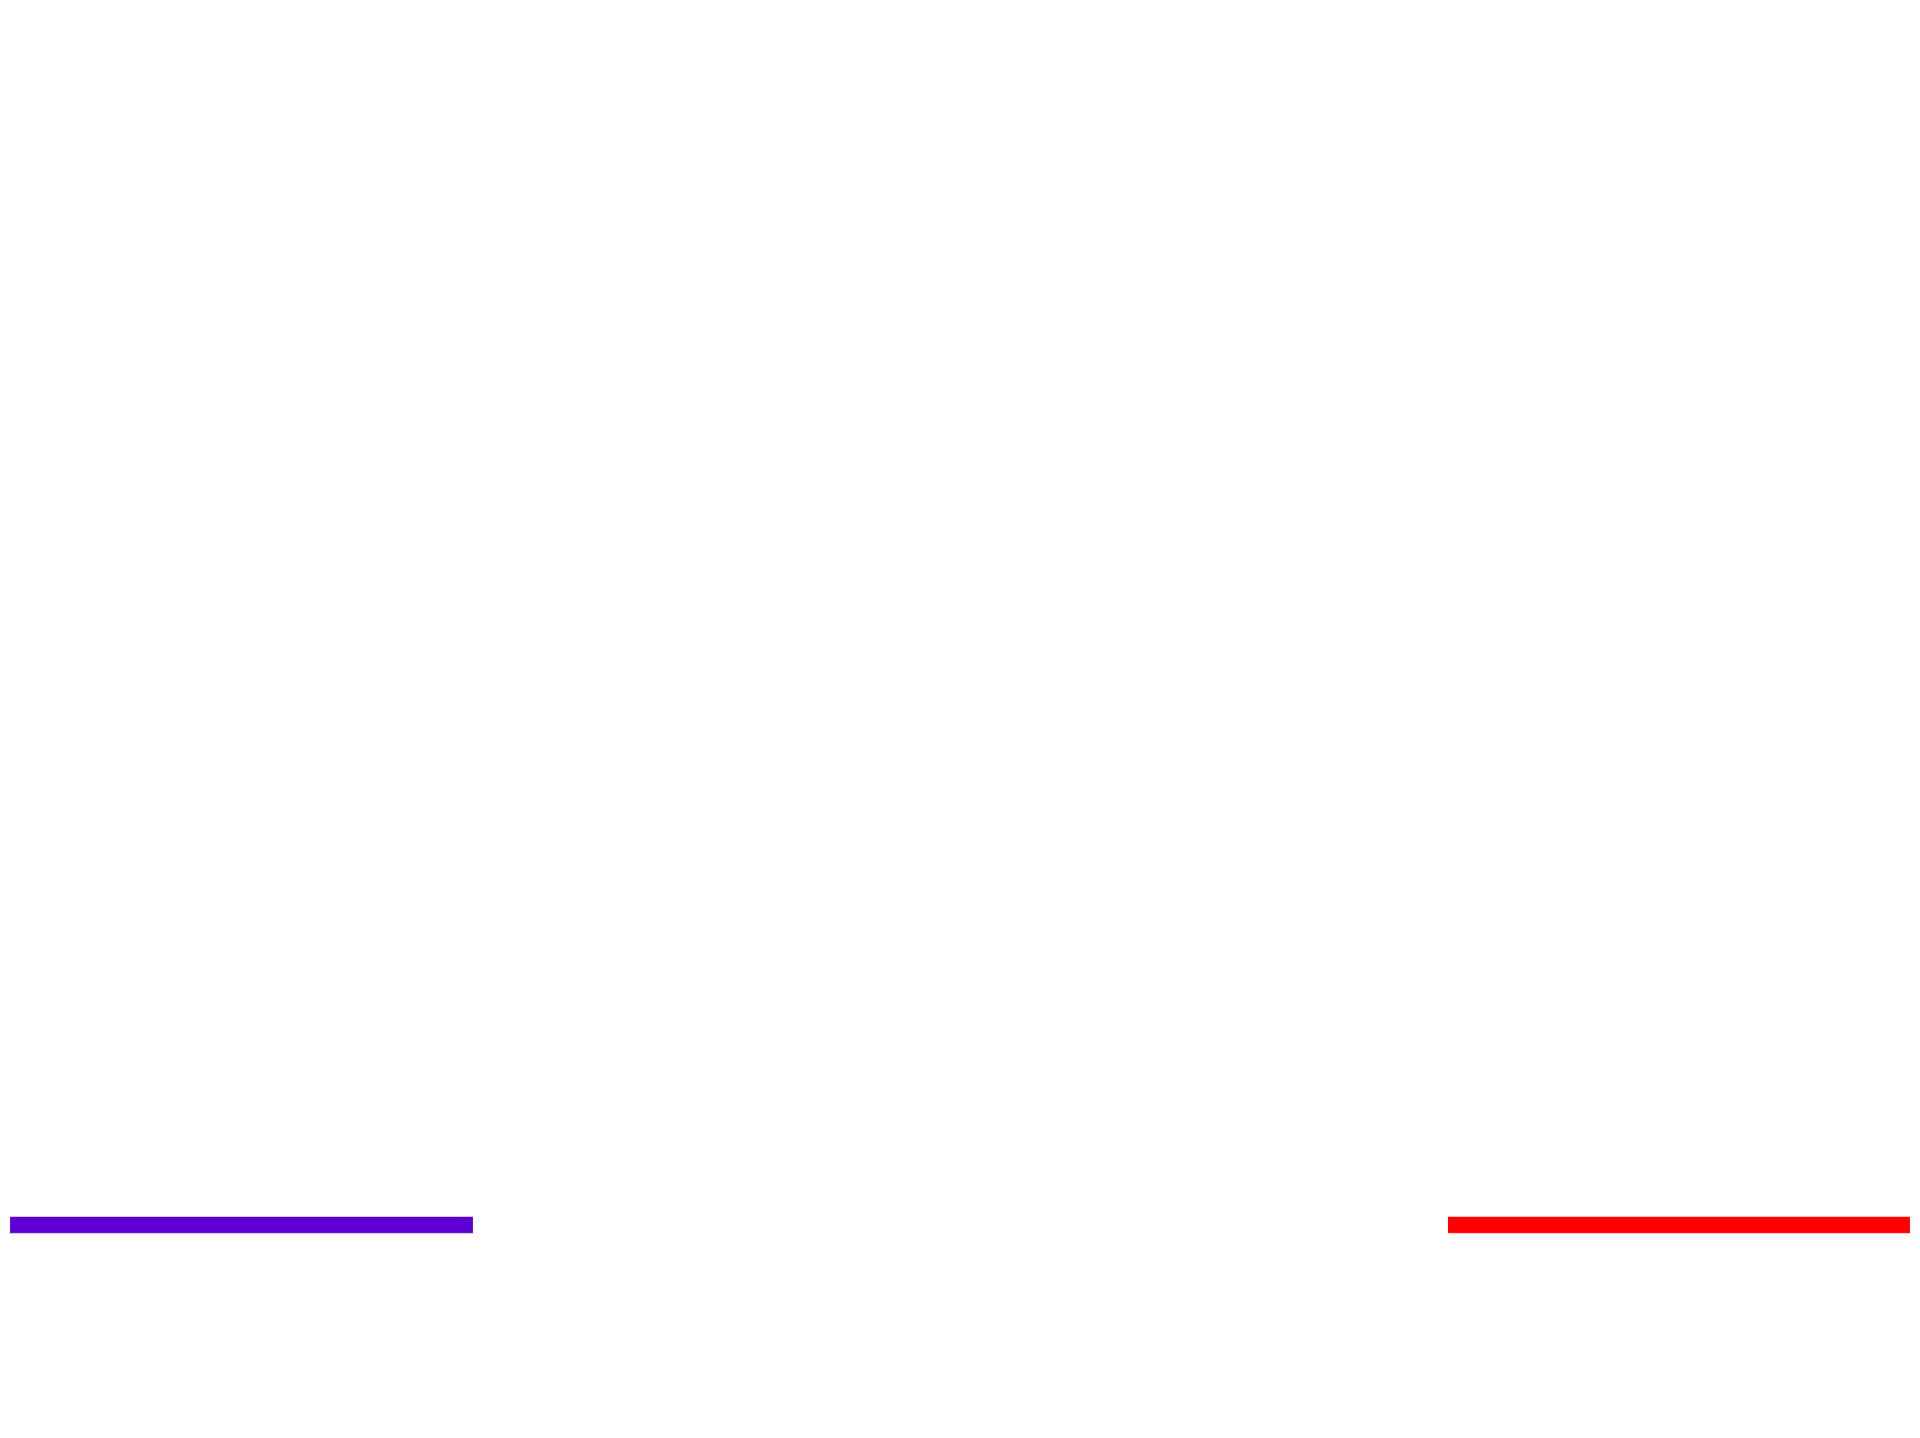 METHOD_ANIMATION_logo_mediawan.png